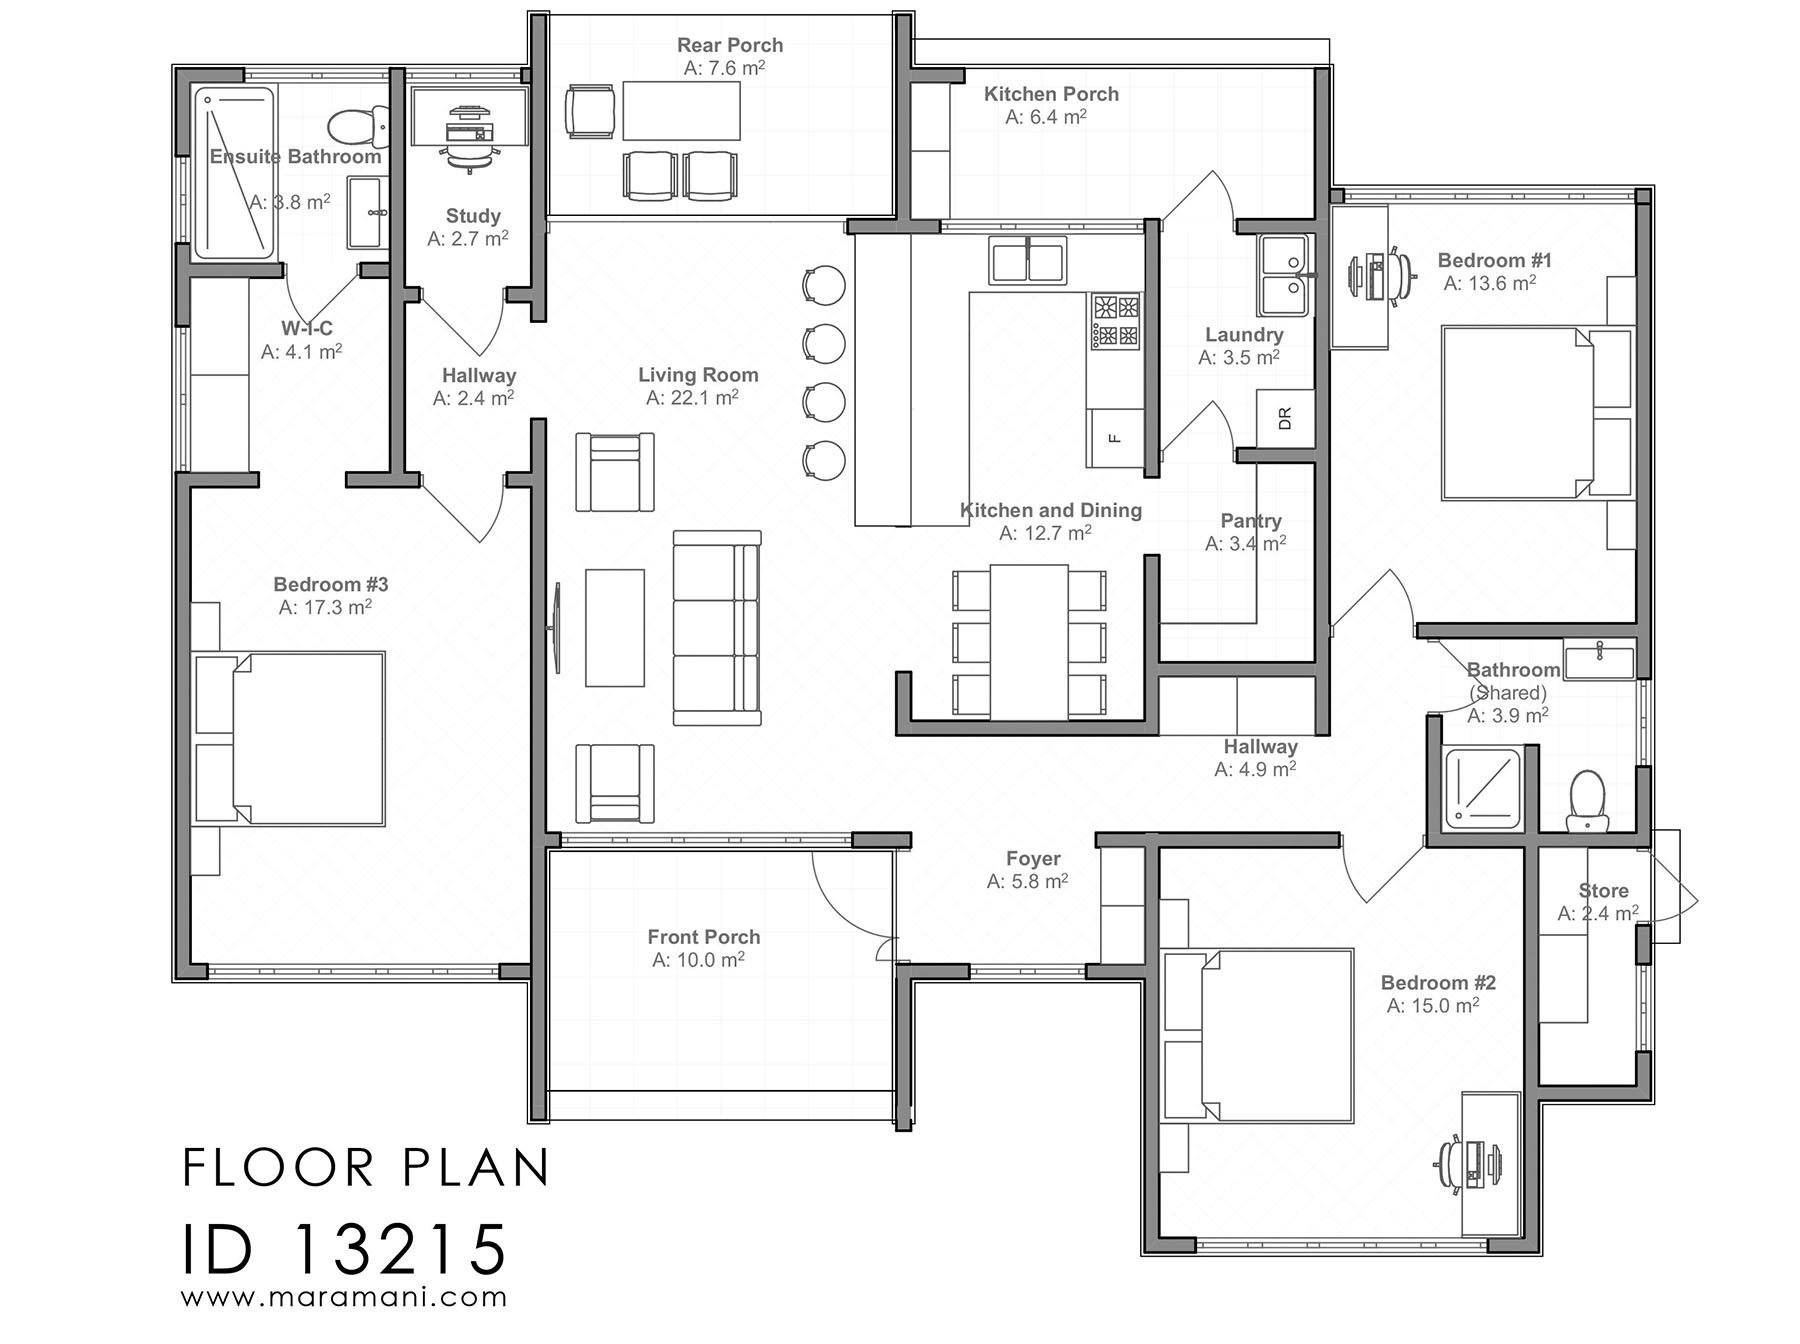 3 bedrooms Building Plan - ID 13215